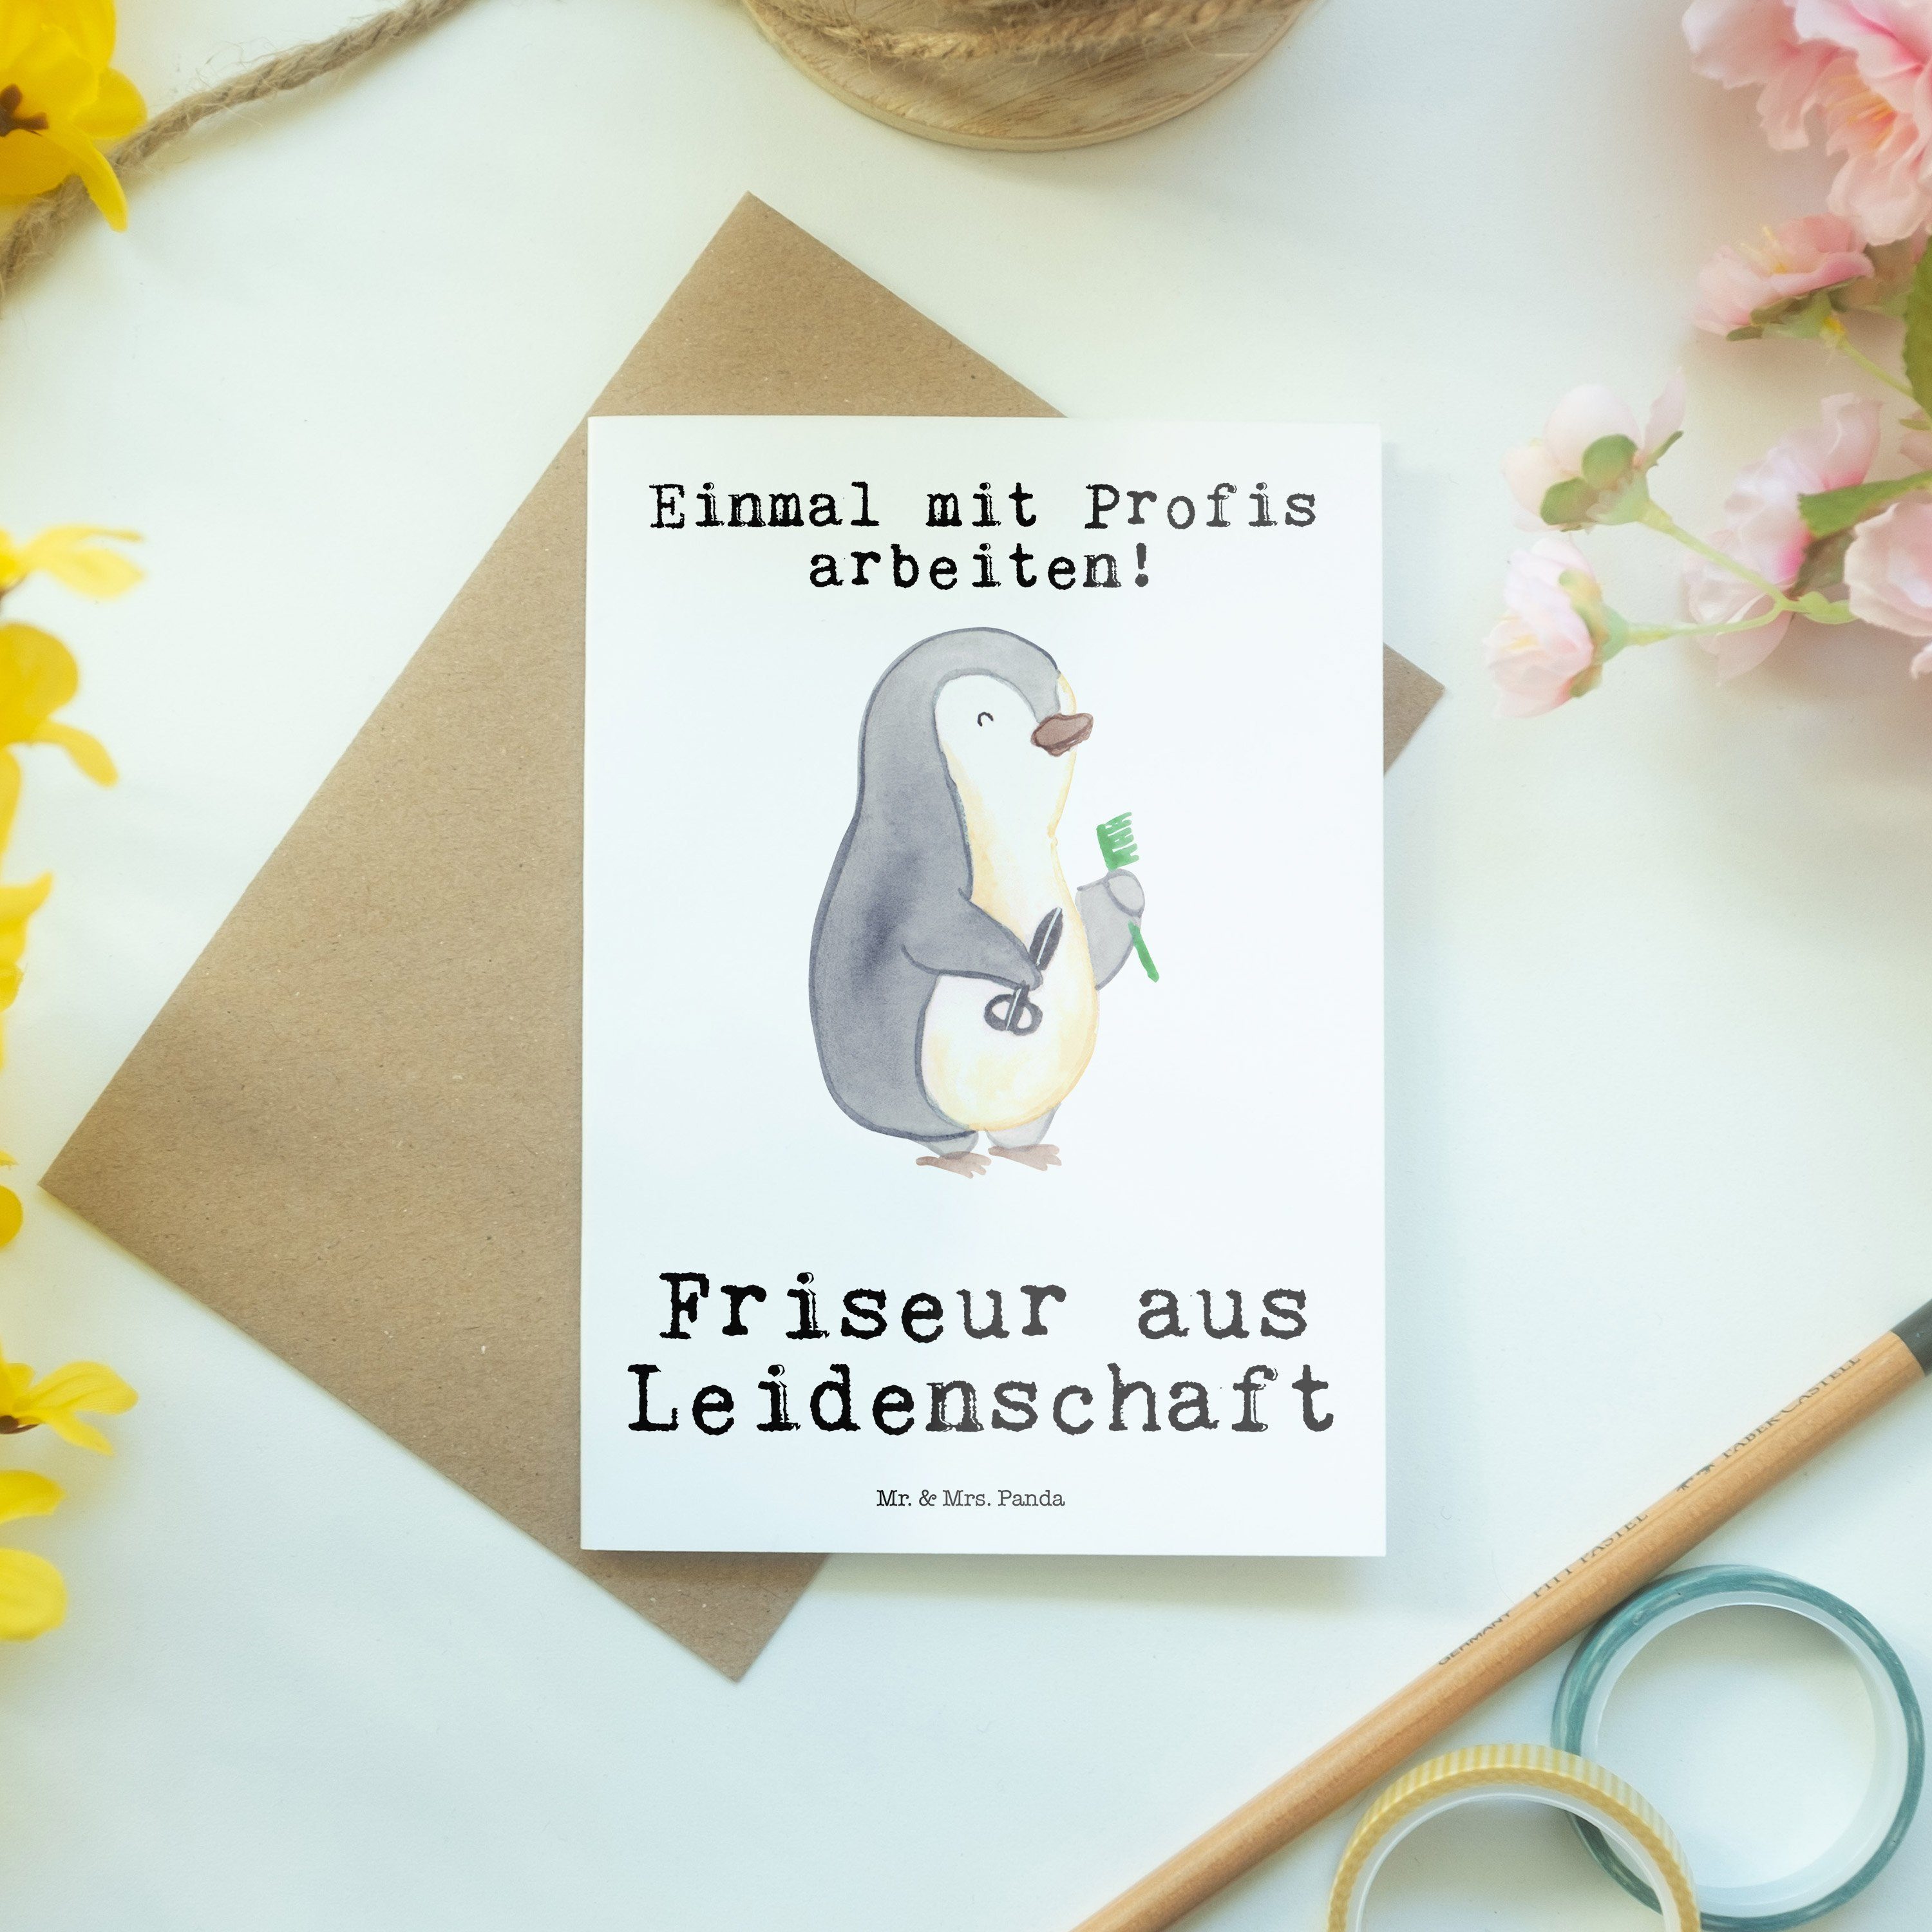 Mr. & Mrs. Panda Leidenschaft Weiß - Grußkarte aus Kollege, Geburtstagskarte - Geschenk, Friseur